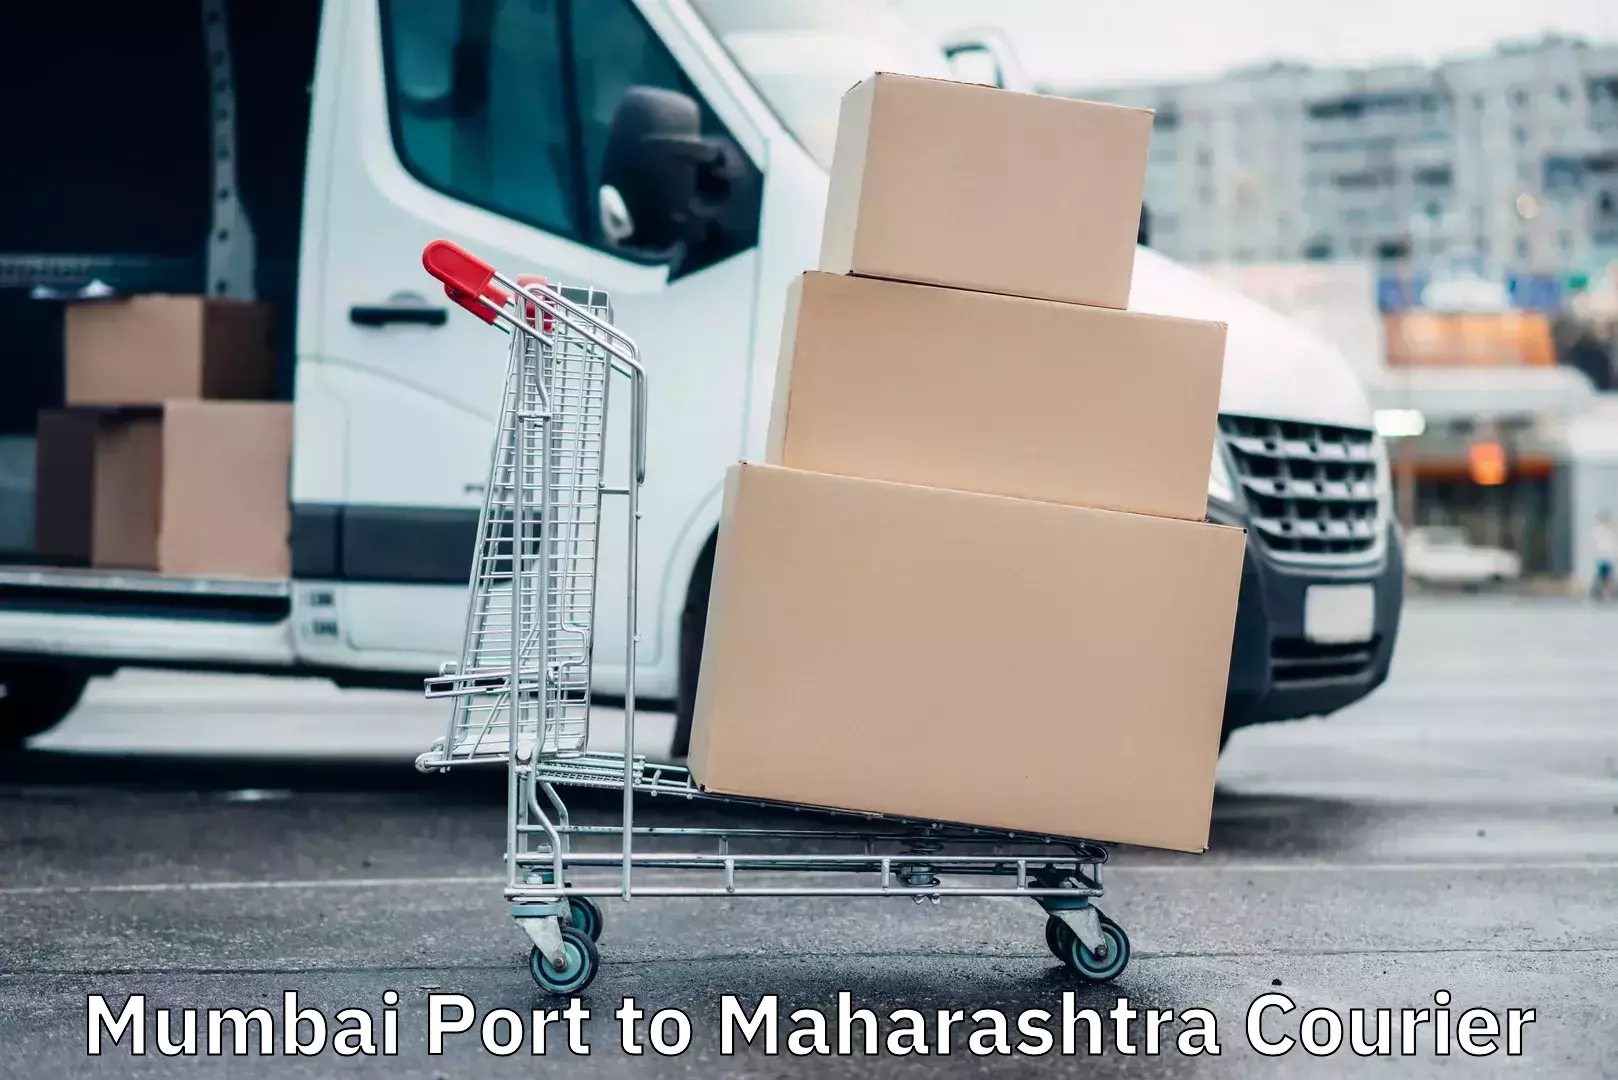 Courier service partnerships Mumbai Port to Maharashtra